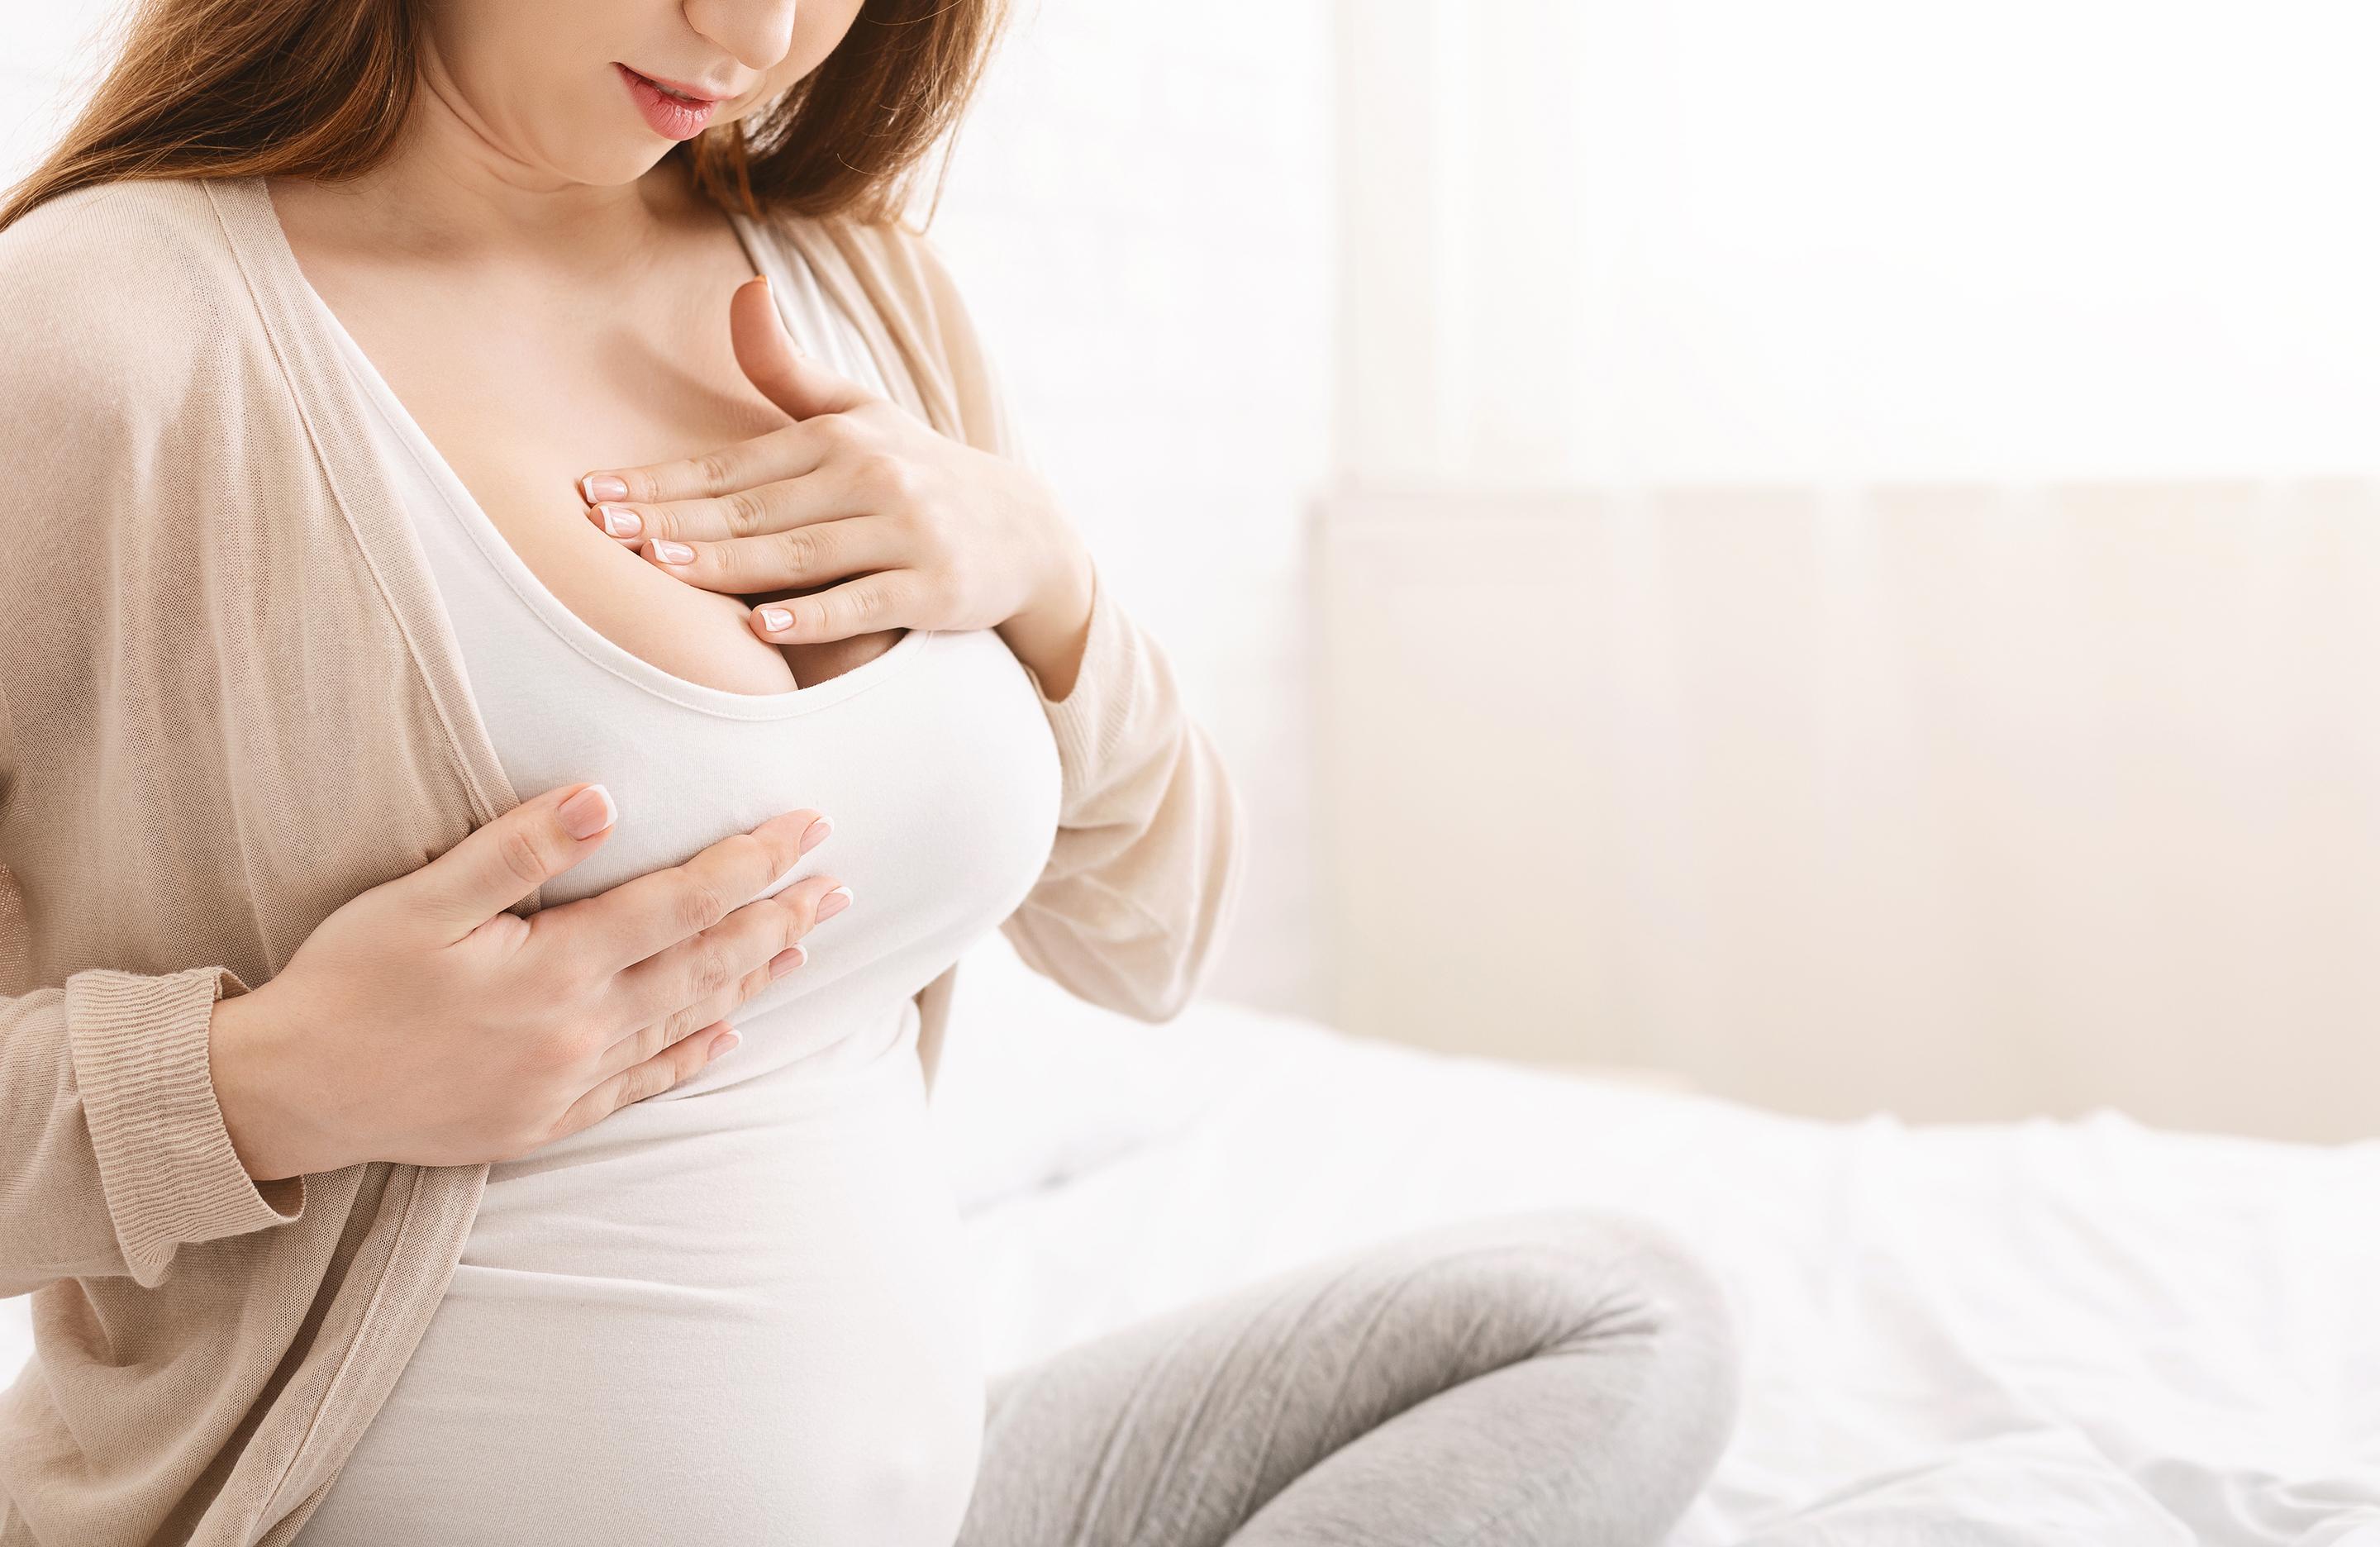 грудь увеличилась перед месячными или беременность фото 112